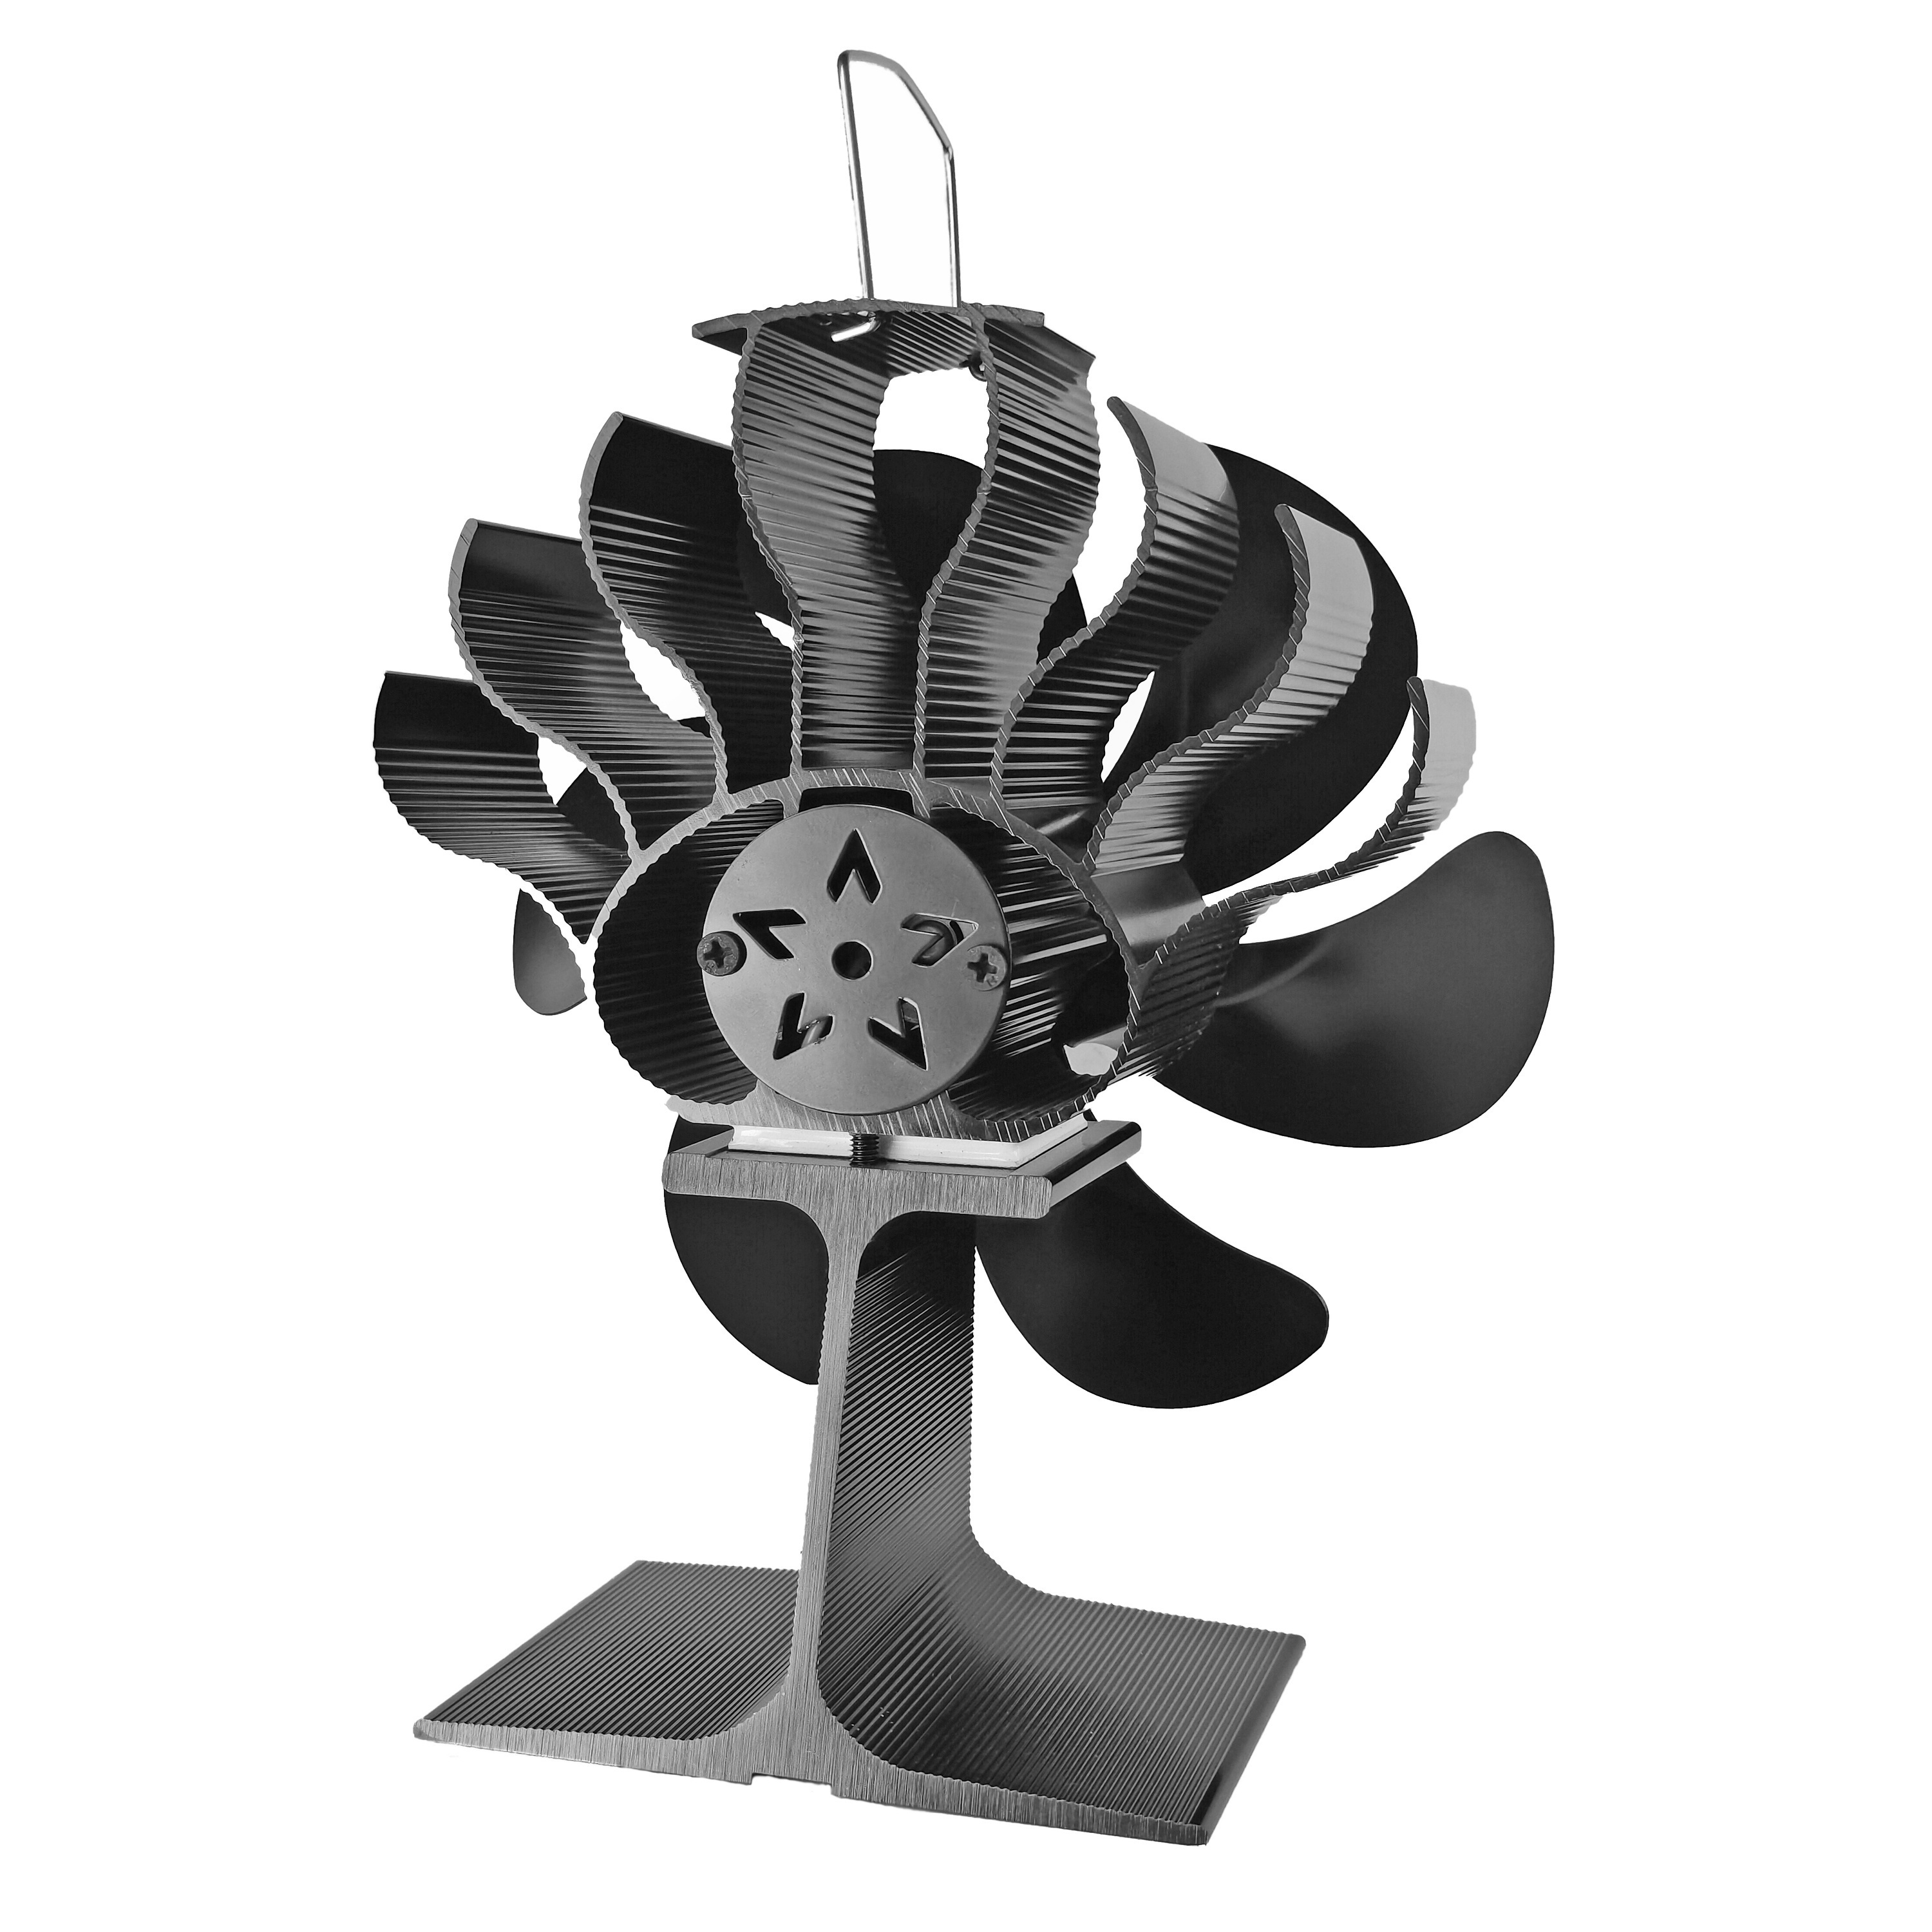 Timubike Nouveau ventilateur à air chaud cheminée ventilateur lame